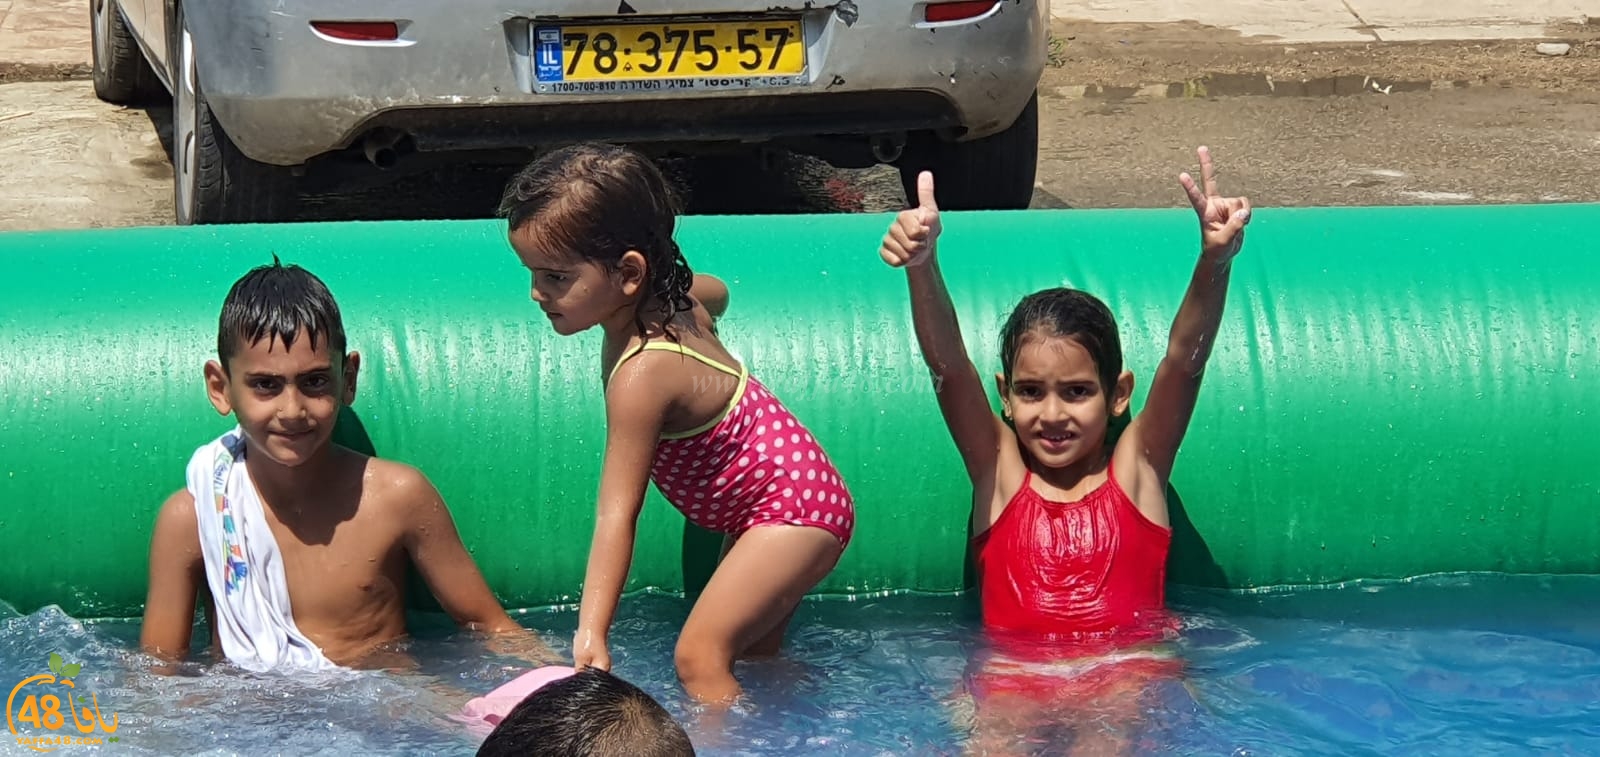 بالفيديو: ألعاب مائية للأطفال في ساحة مسجد النور باللد بمناسبة رأس السنة الهجرية